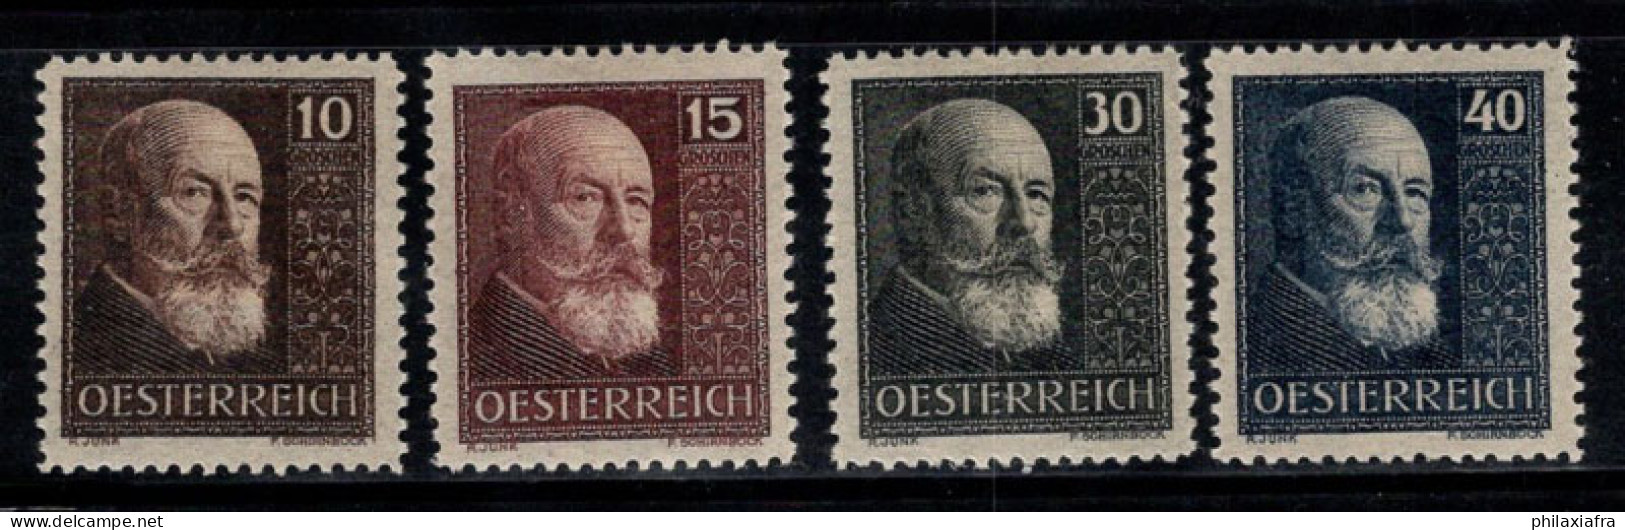 Autriche 1928 Mi. 494-497 Neuf * MH 100% Hainisch, Célébrités - Unused Stamps